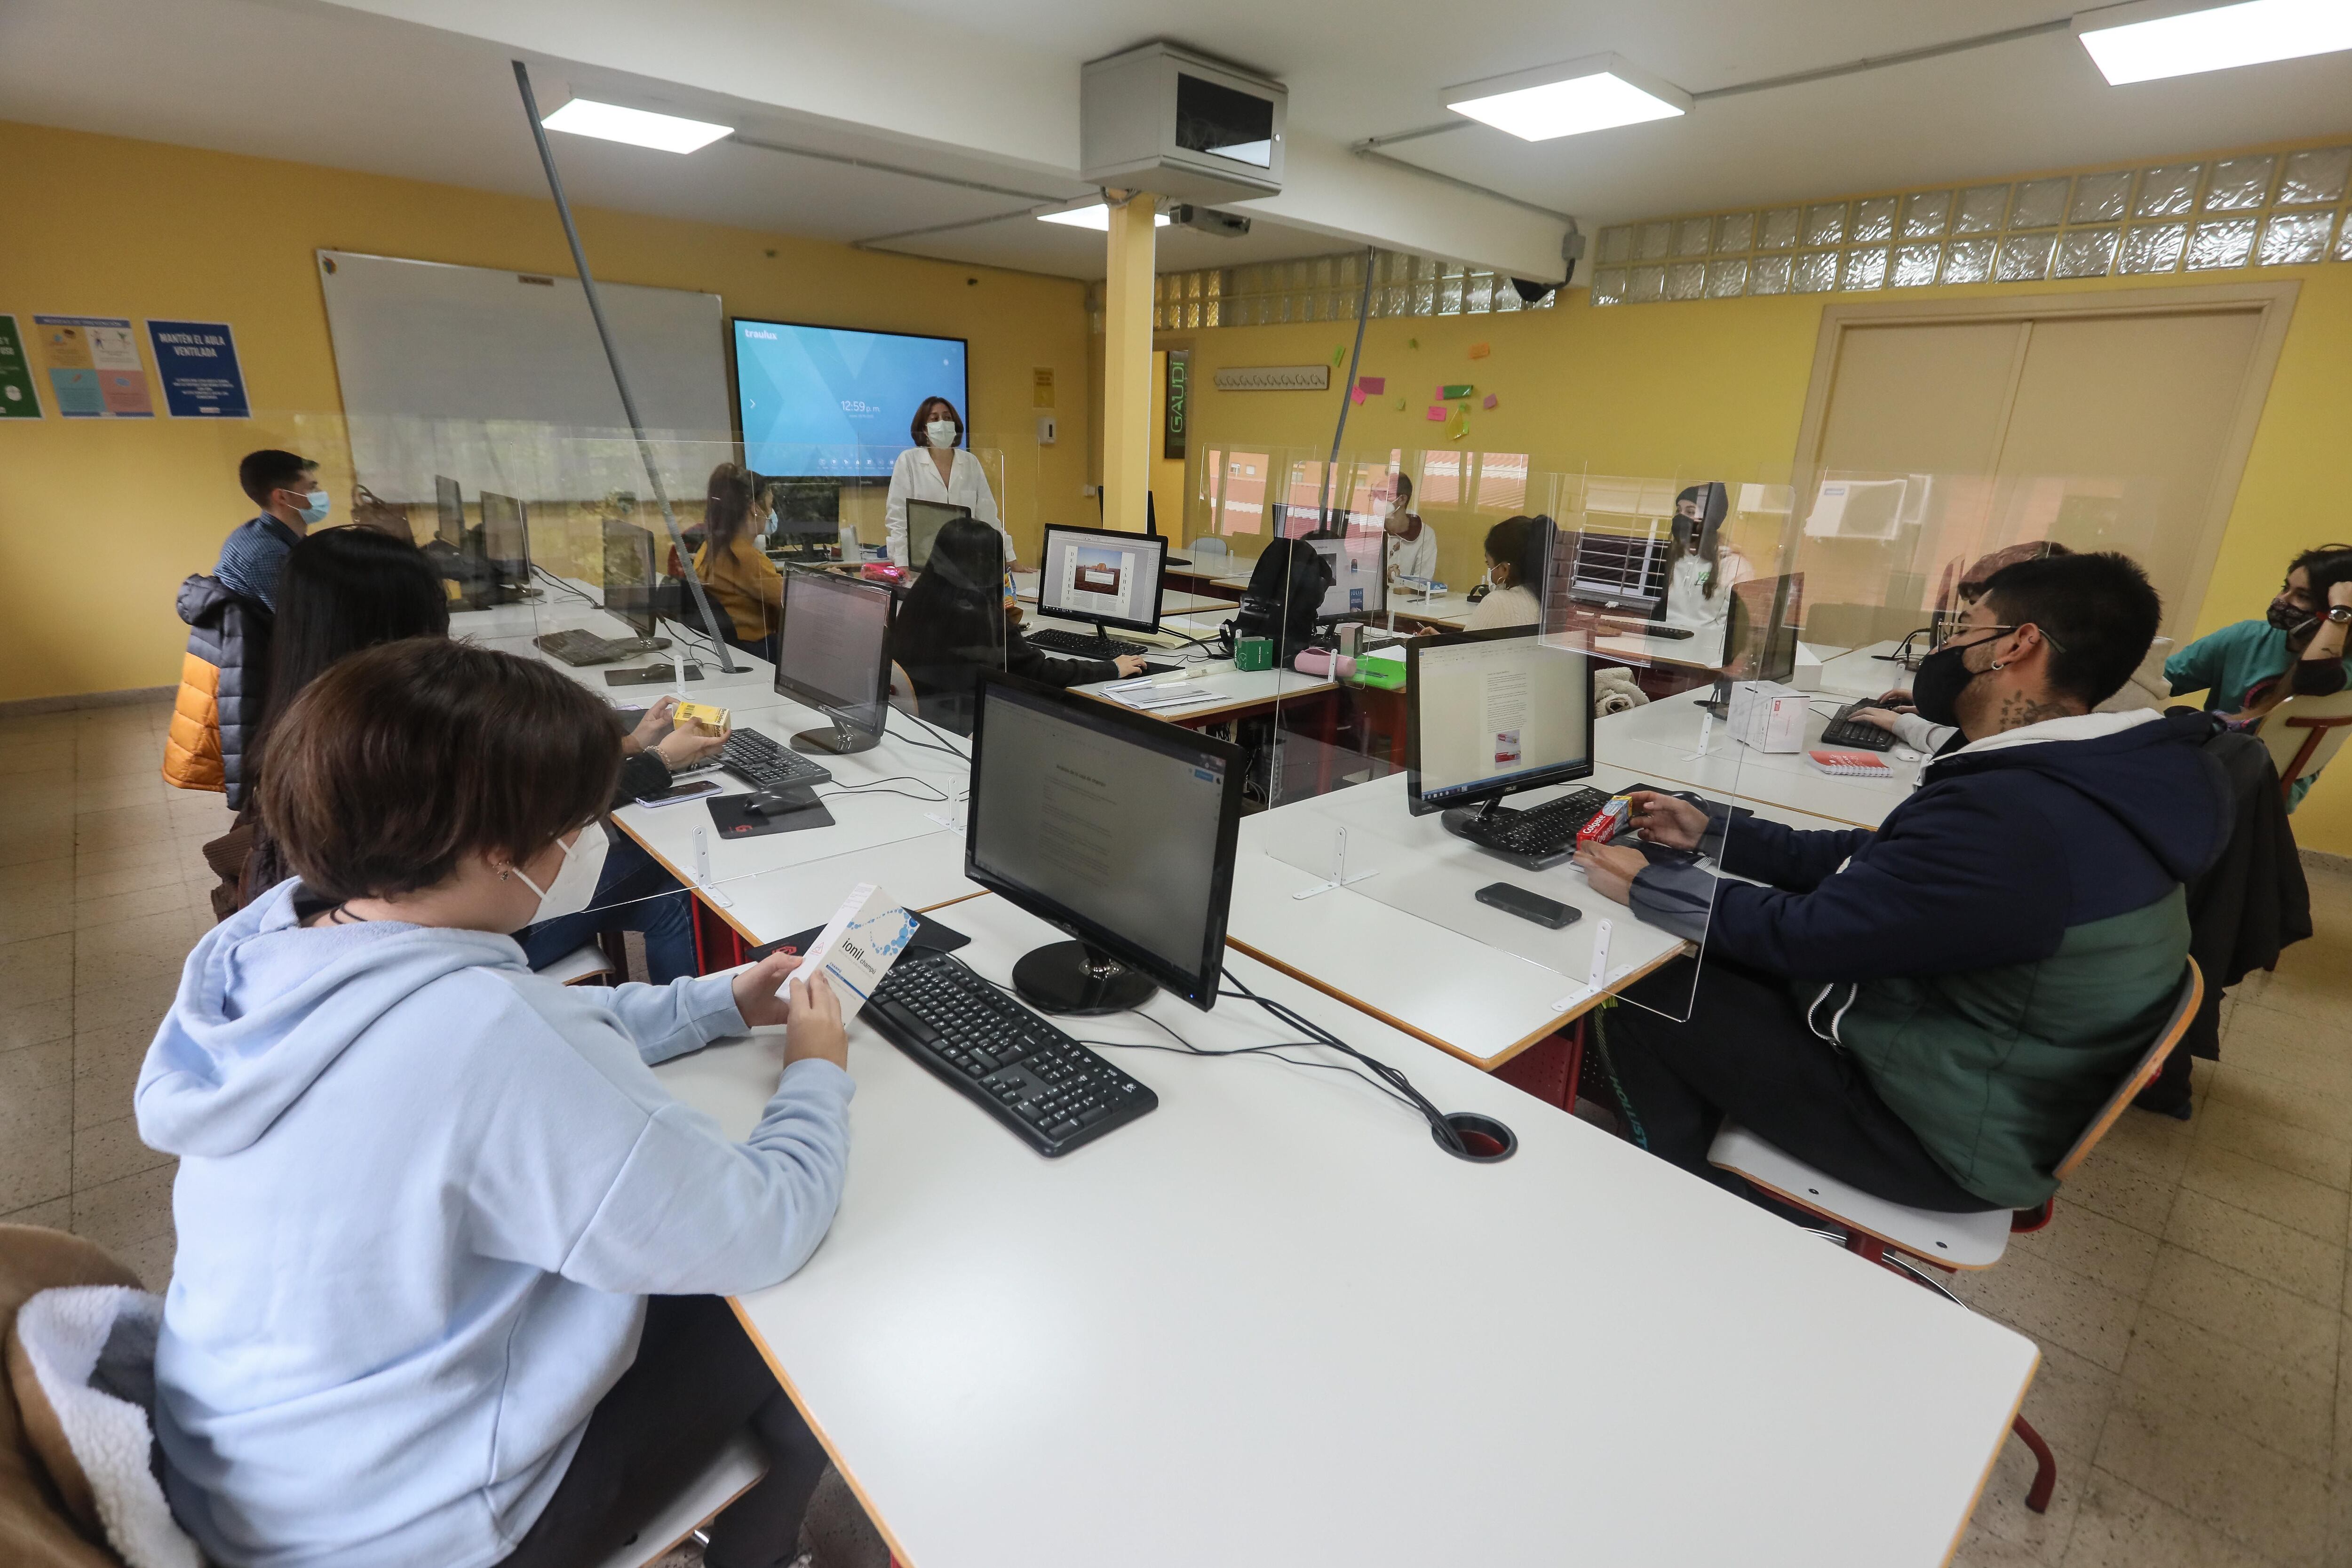 Una profesora y sus alumnos en un aula del instituto de Formación Profesional Puerta Bonita de Madrid.